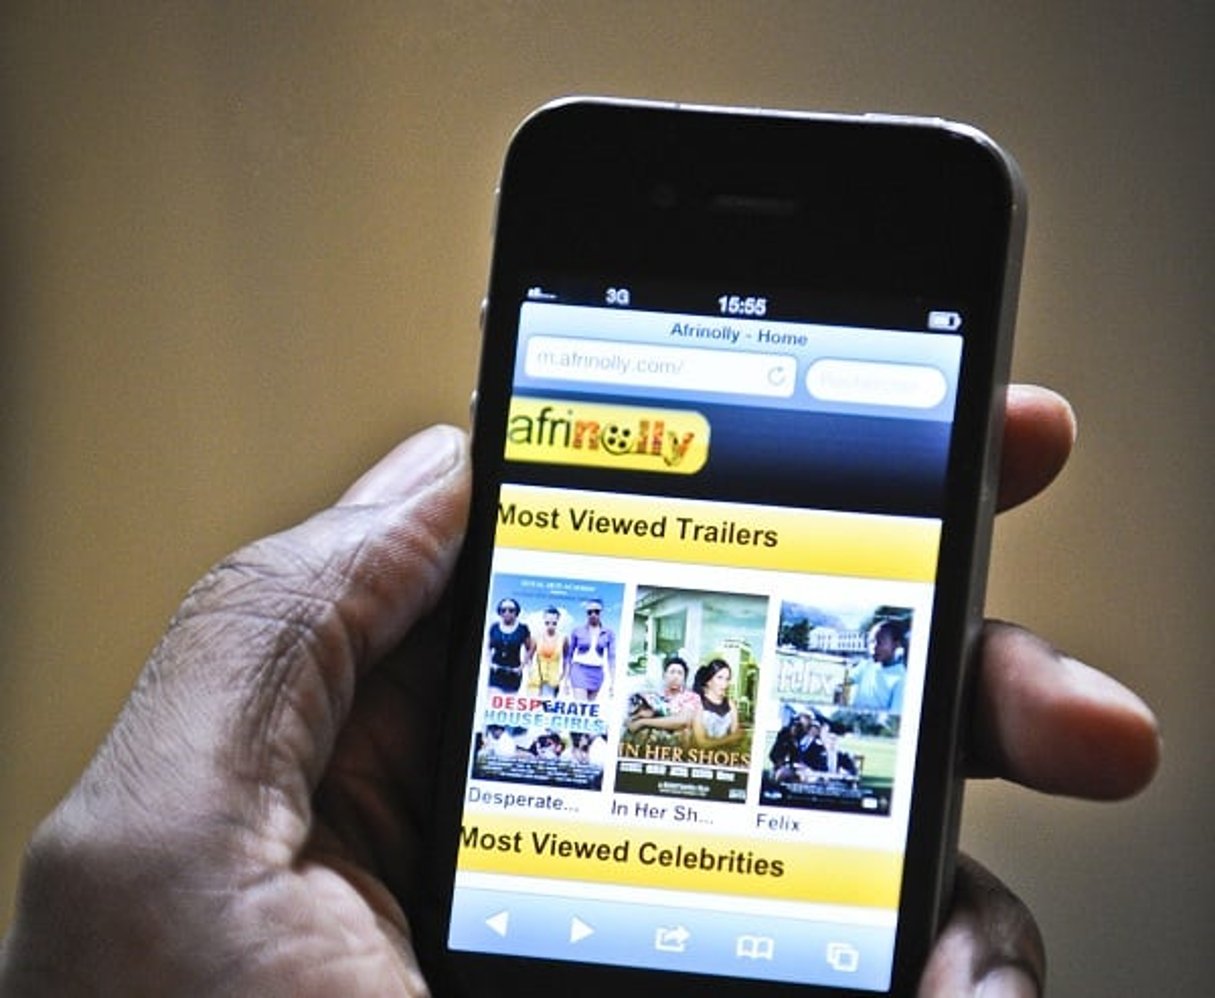 Afrinolly, Site nigerian de cinéma et séries télévisées sur Iphone. © Vincent FOURNIER/Jeune Afrique